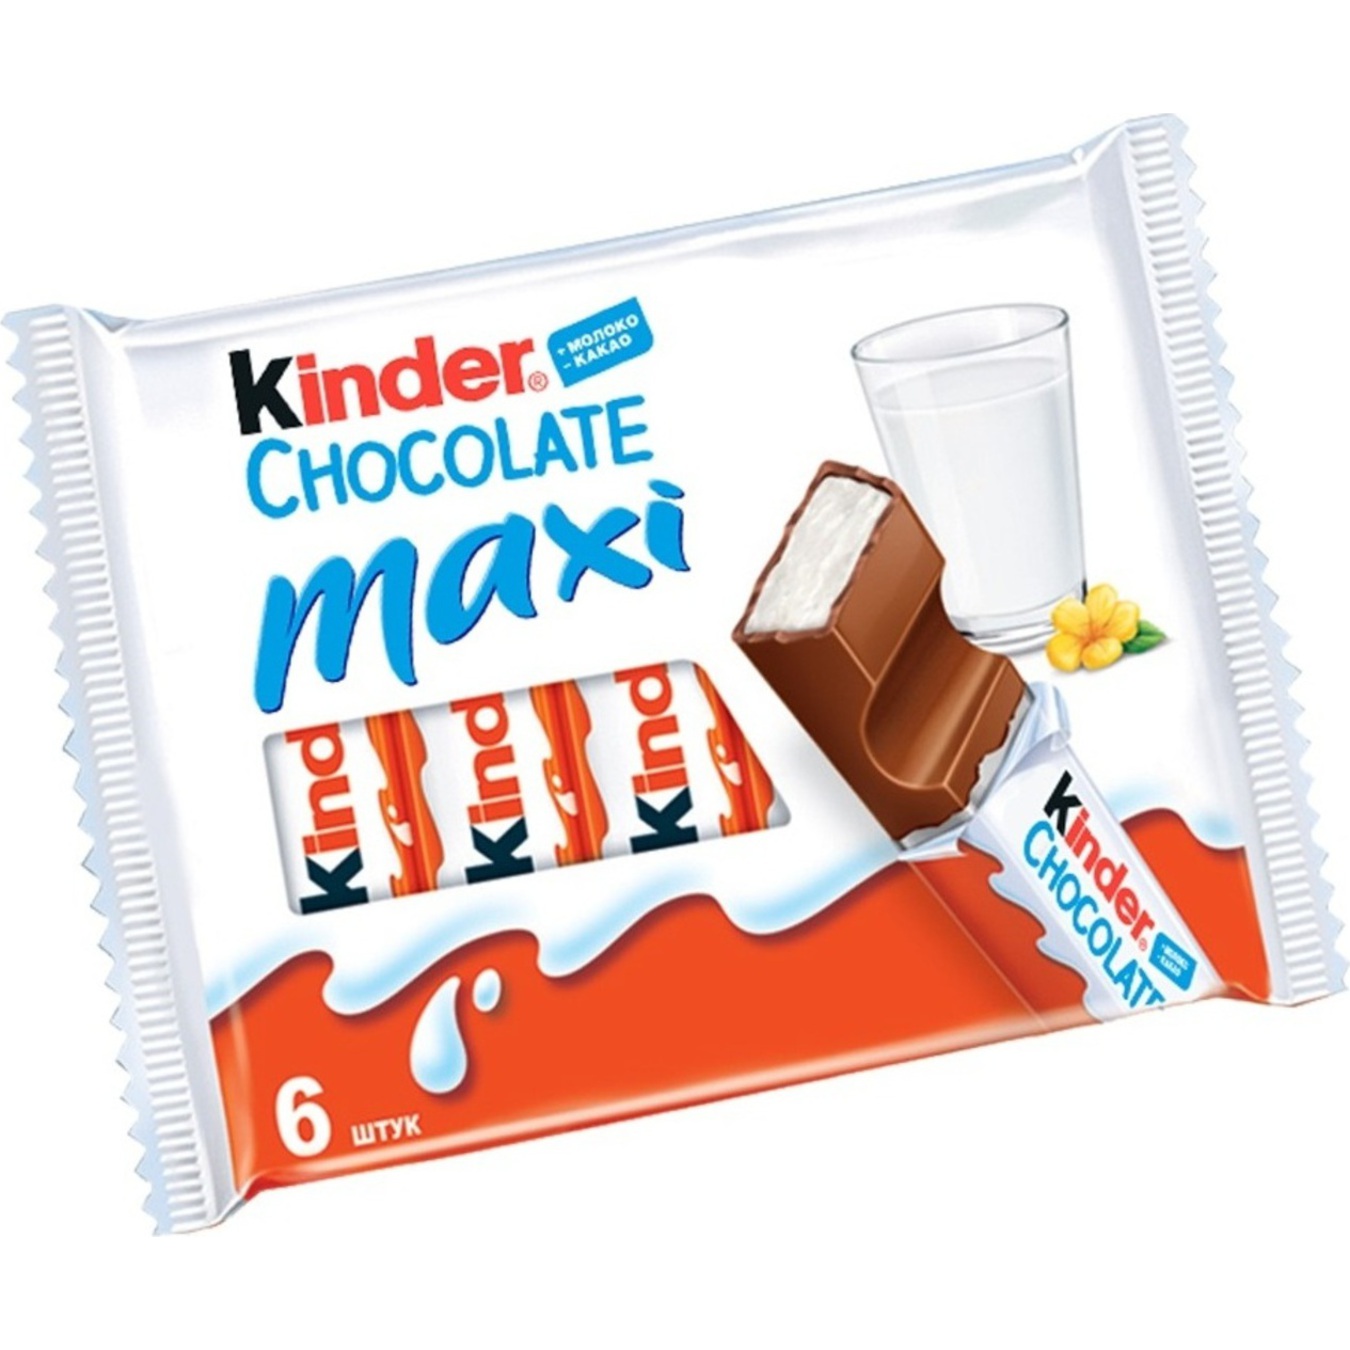 Kinder Maxi Chocolate Bar with Milk Filling 6pcs*21g